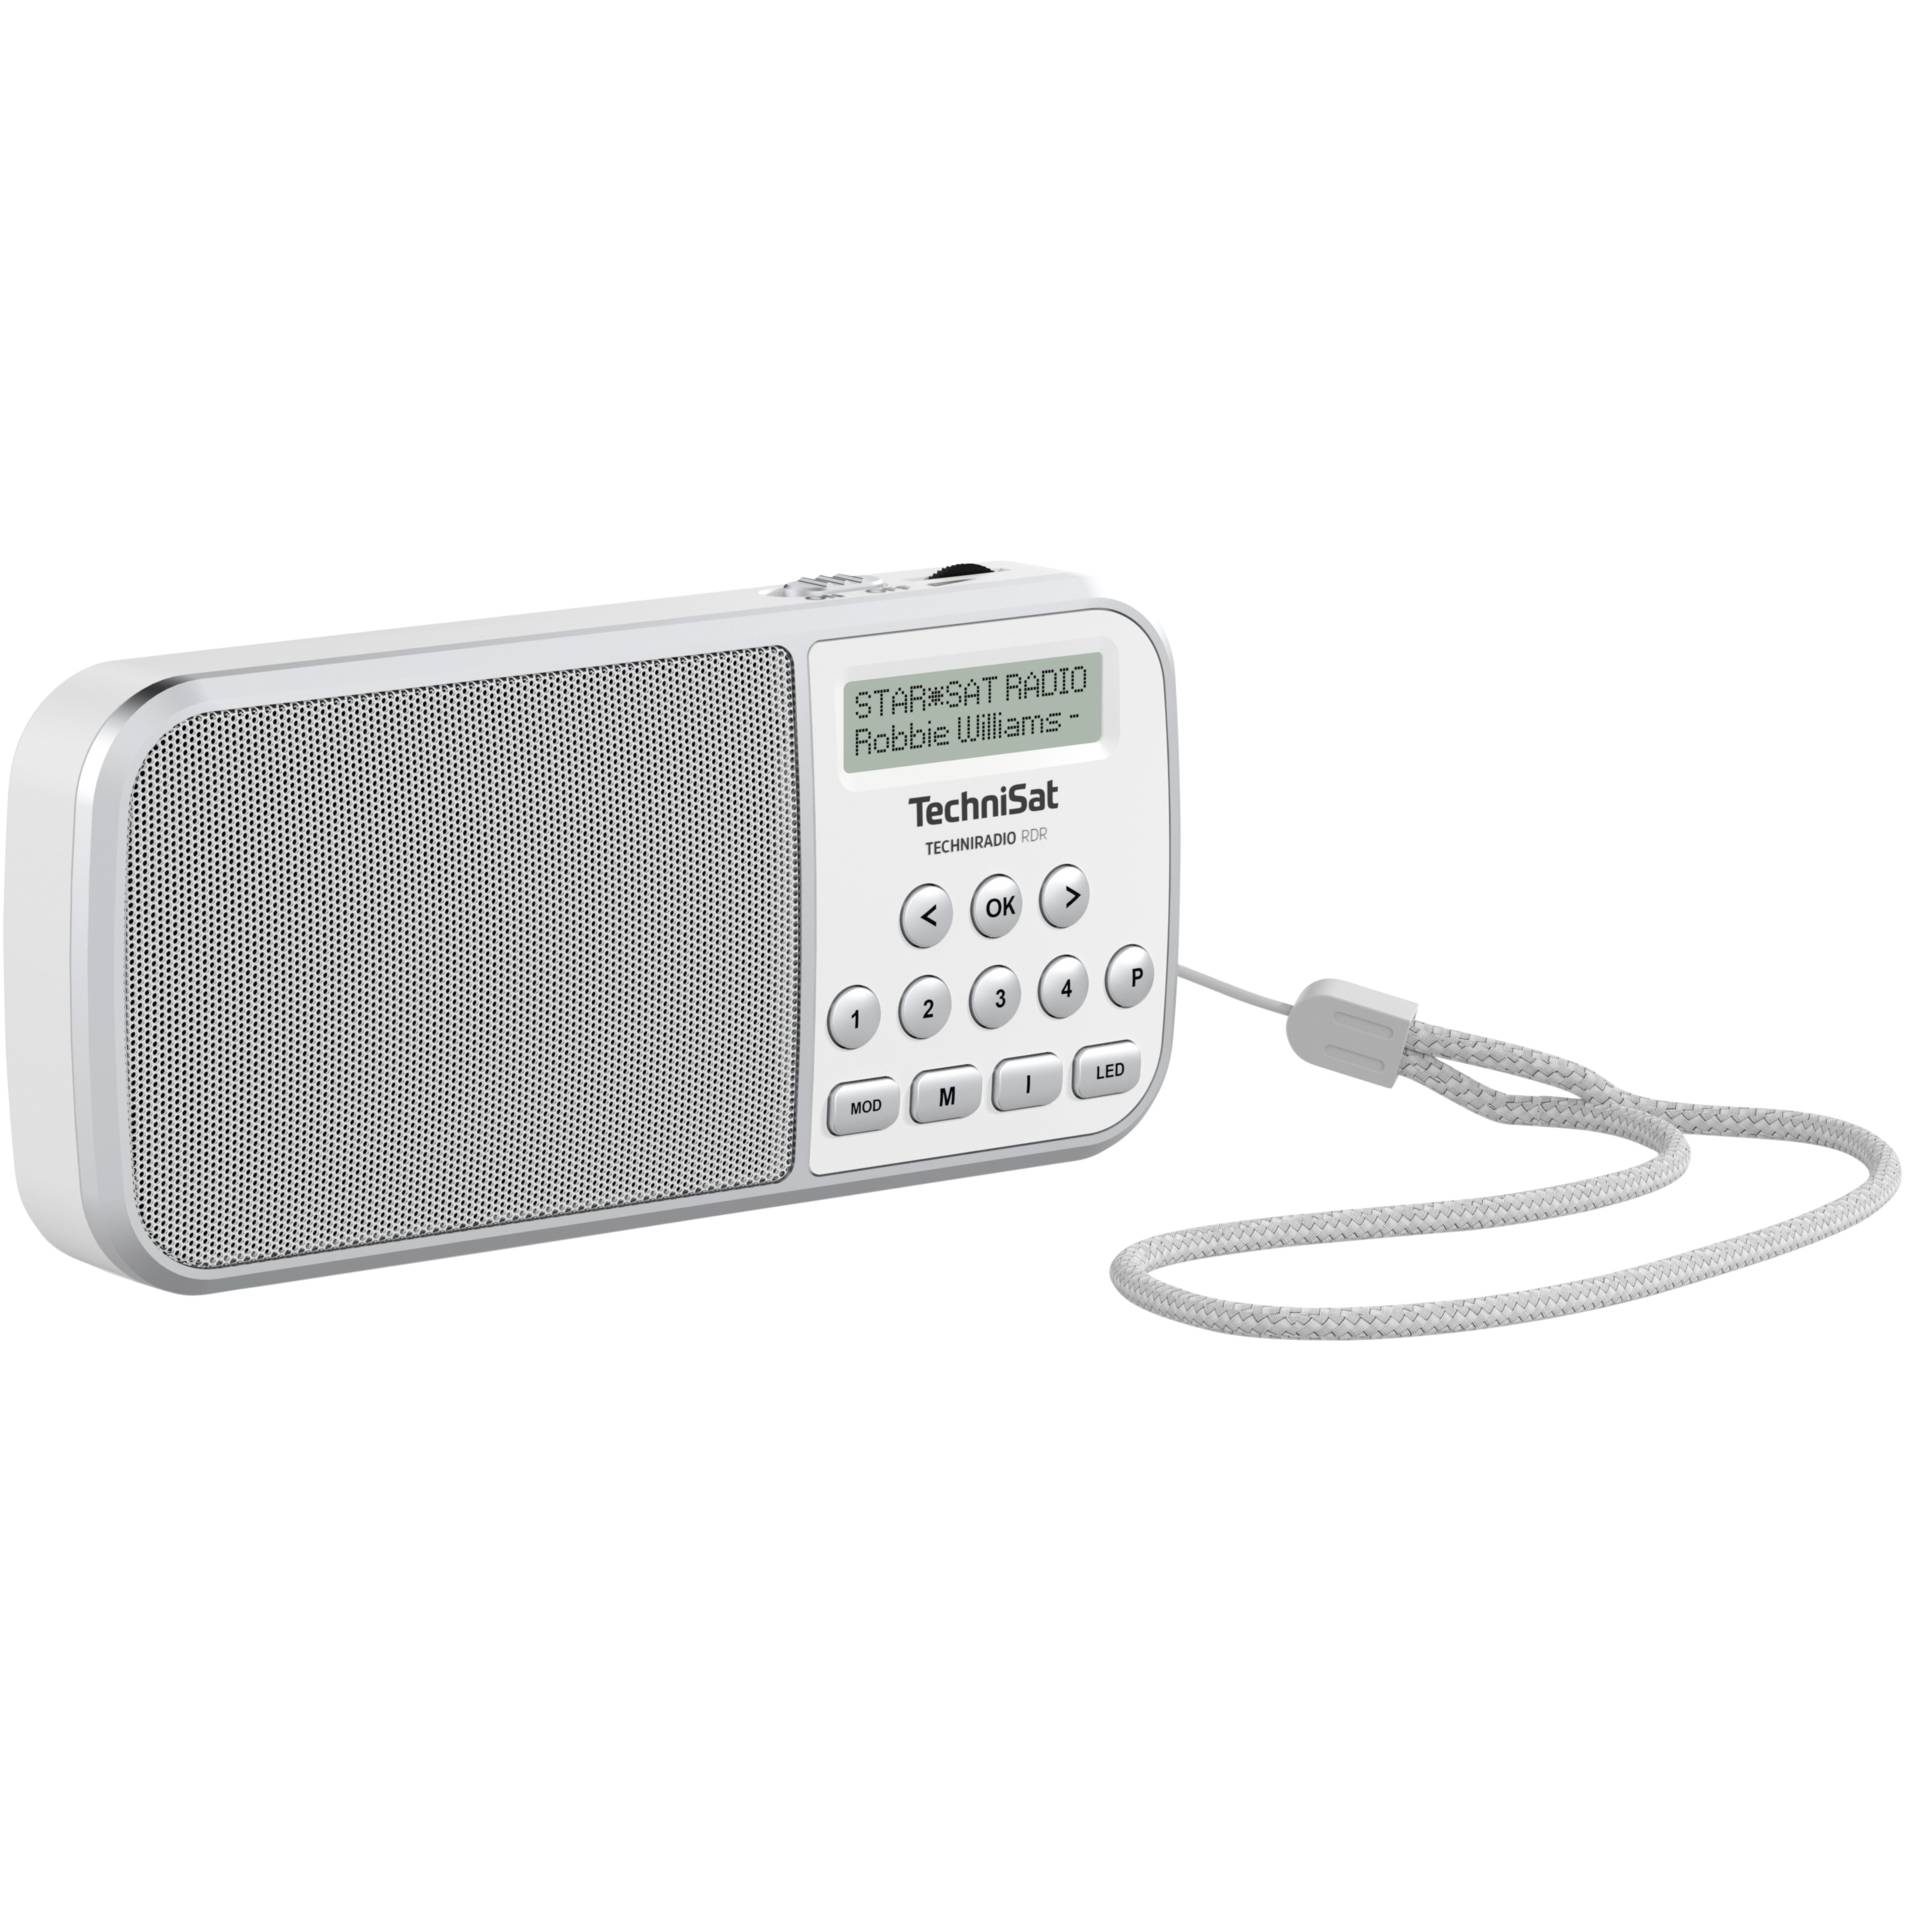 weiß portable, Technisat -TechniSat TECHNIRADIO Technisat RDR DAB+ USB, Radio, Hardware/Electronic -